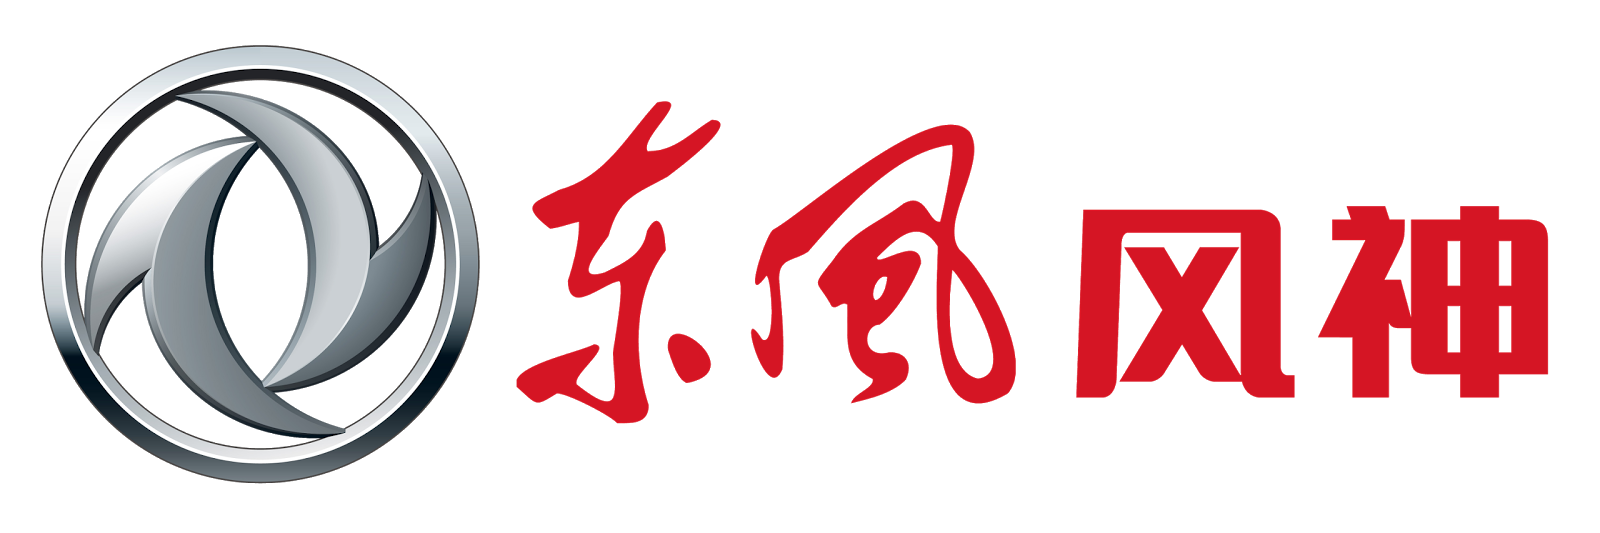 Hyundai Motor Company Logo. F